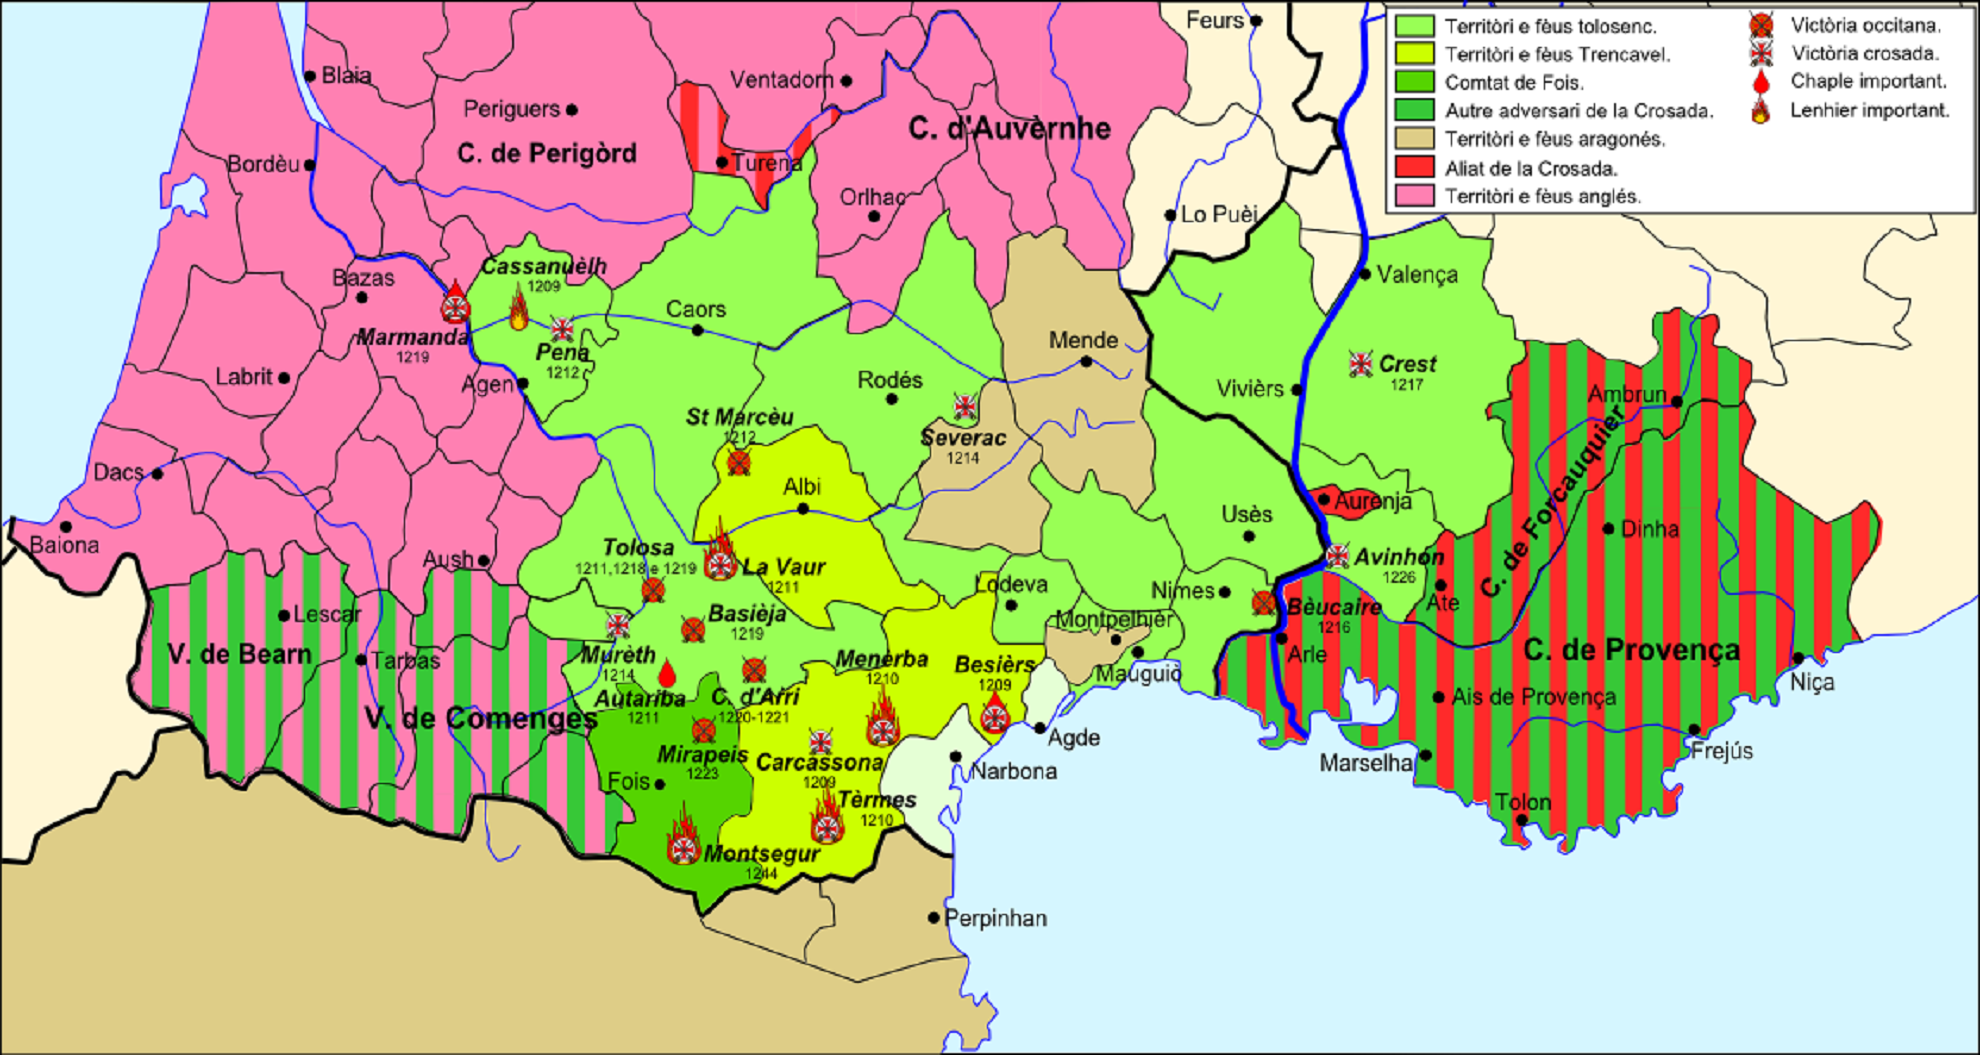 Mapa polític d'Occitània i dels dominis Trencavell a principis del segle XIII. Font Wikiwand